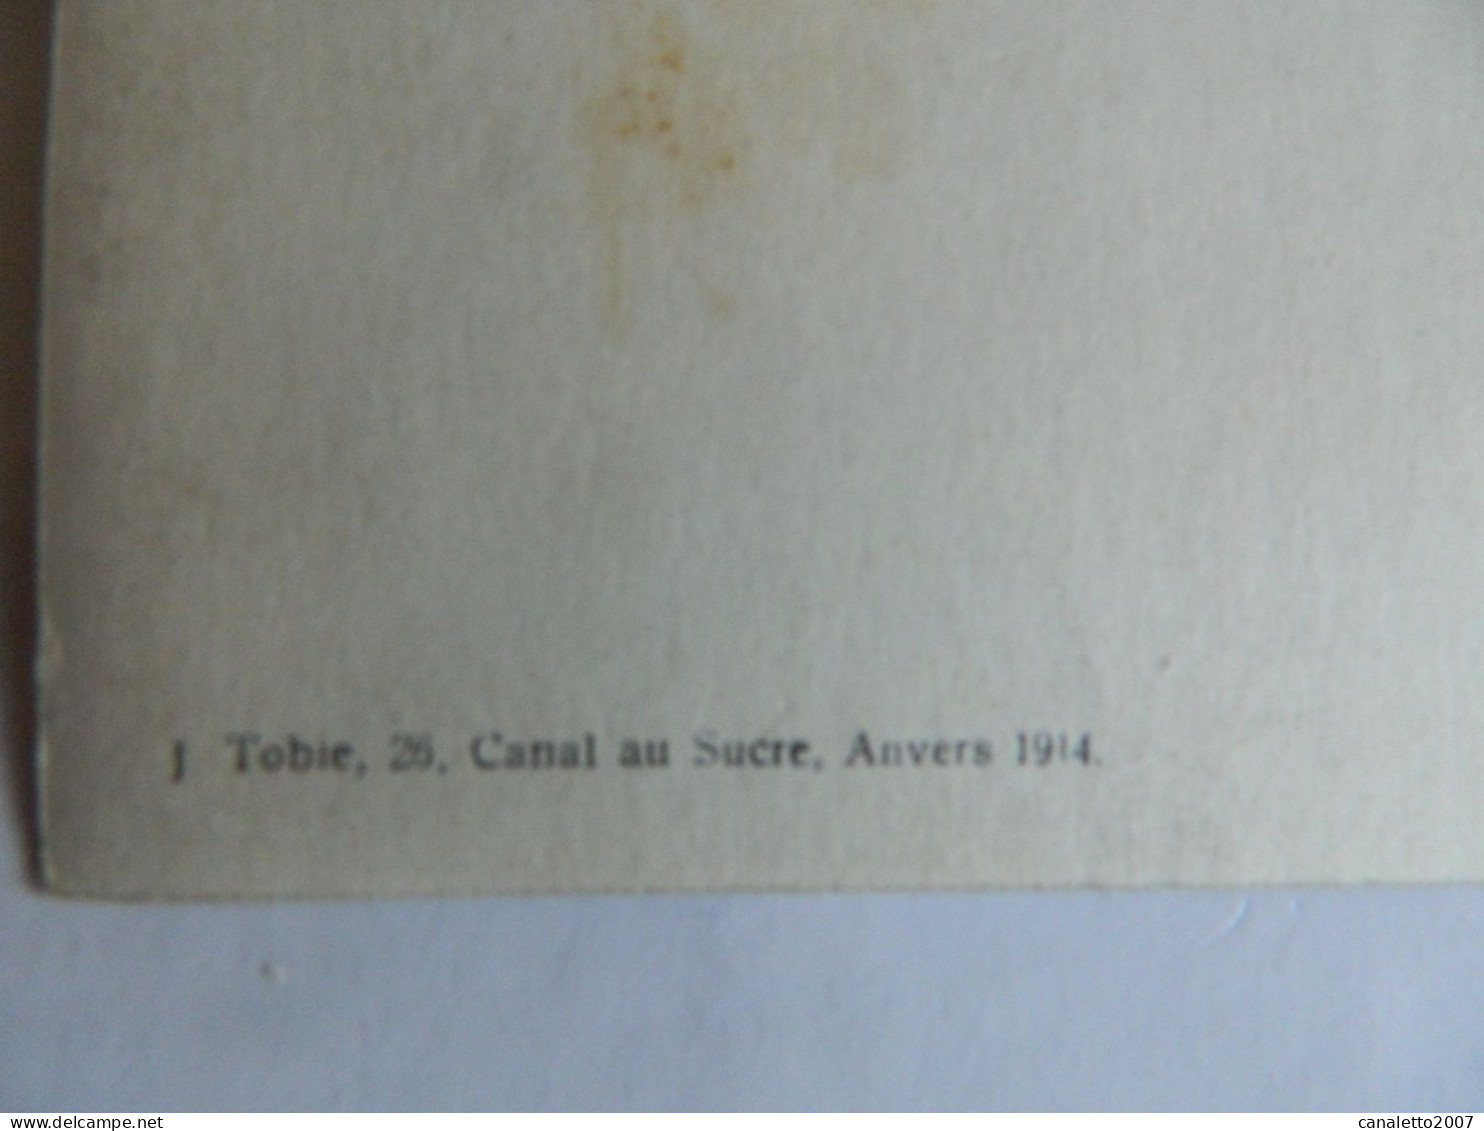 MILITARIA+ANVERS:PHOTO CARTE DE MILITAIRE EN 1913 FAIT PAR J.TOBIE 26 CANAL AU SUCRE ANVERS - Characters